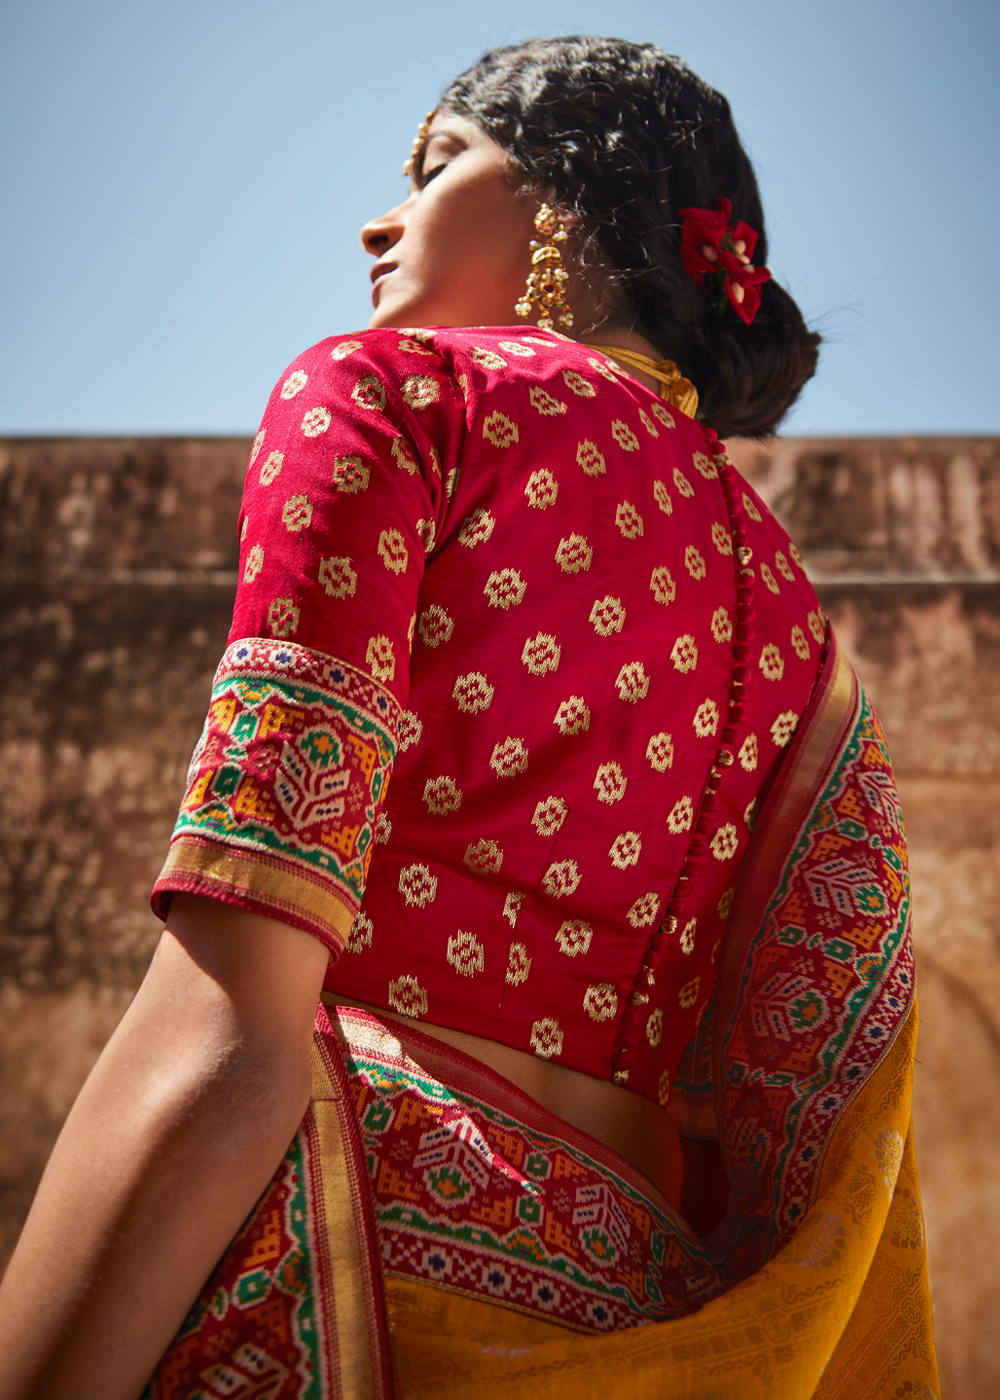 Buy MySilkLove Golden Yellow and Red Zari Woven Designer Banarasi Saree Online